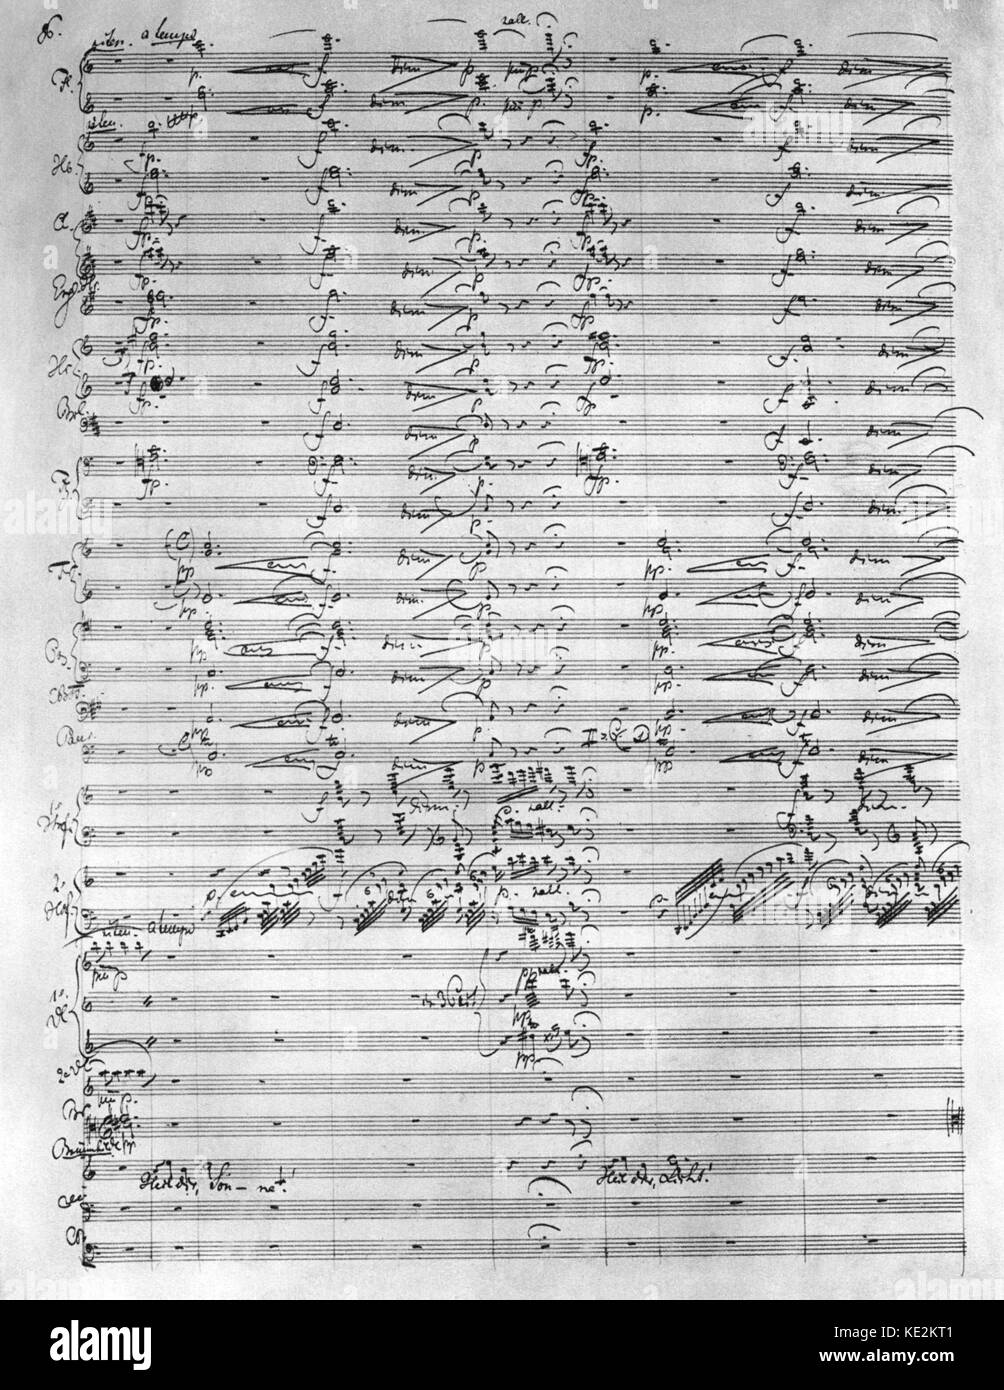 Richard Wagners die "Siegfriedkarte" - handgeschriebene Seite aus Original Score. Die dritte der vier Opern, aus 'Der Ring des Nibelungen' (Der Ring cycle''), von Richard Wagner. Bei den Bayreuther Festspielhaus am 16. August 1876 uraufgeführt, als Teil des ersten vollständigen Ring Stockfoto